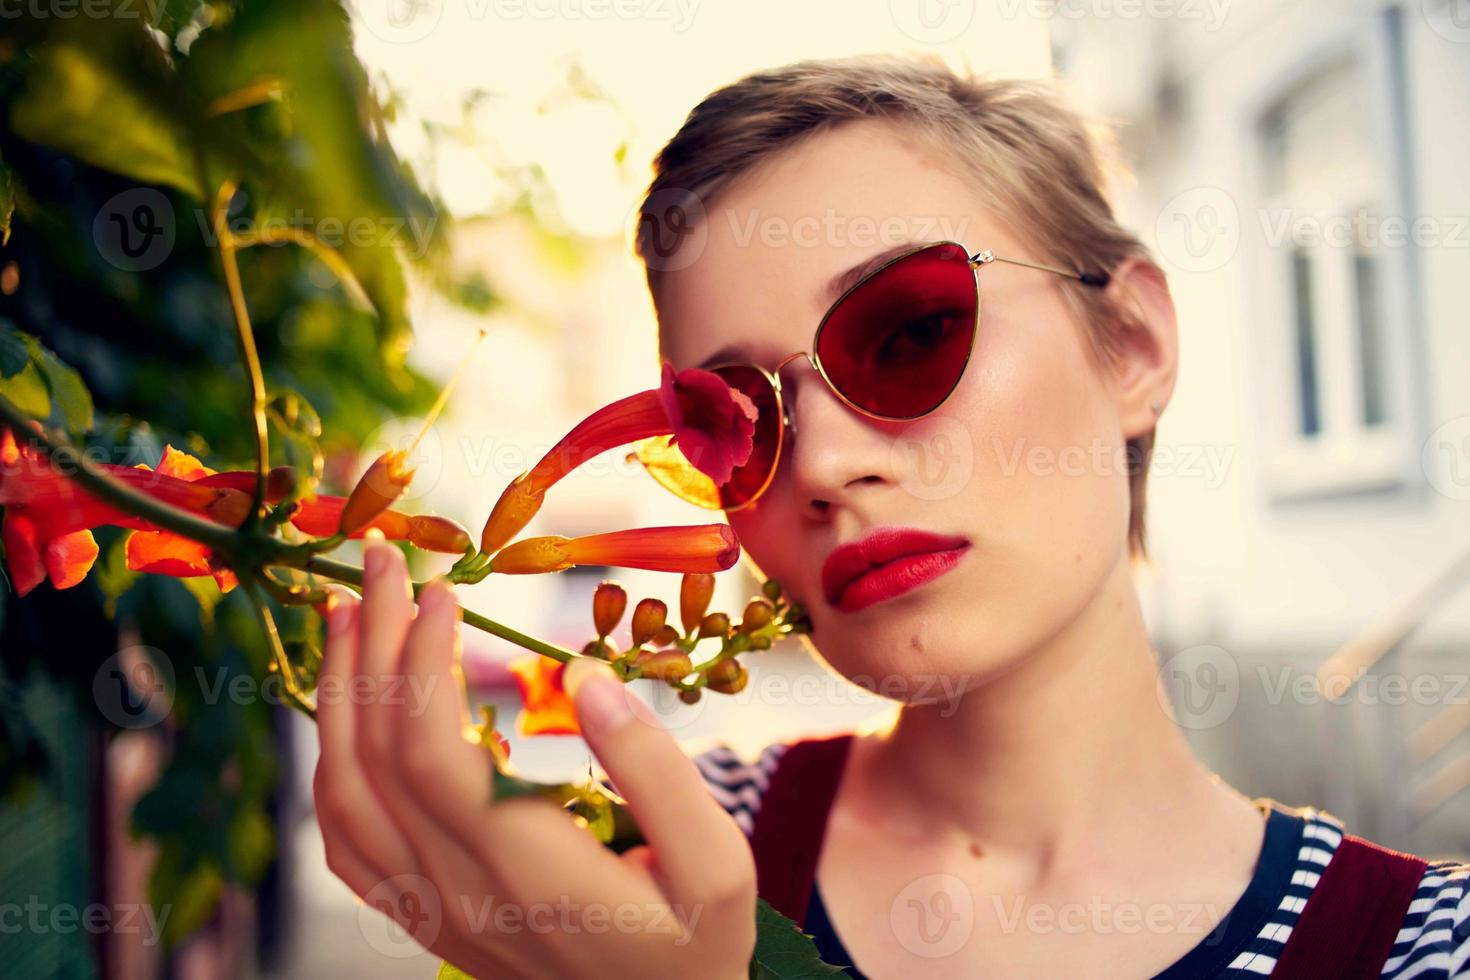 mujer vistiendo Gafas de sol flores Fresco aire 22467492 de stock Vecteezy